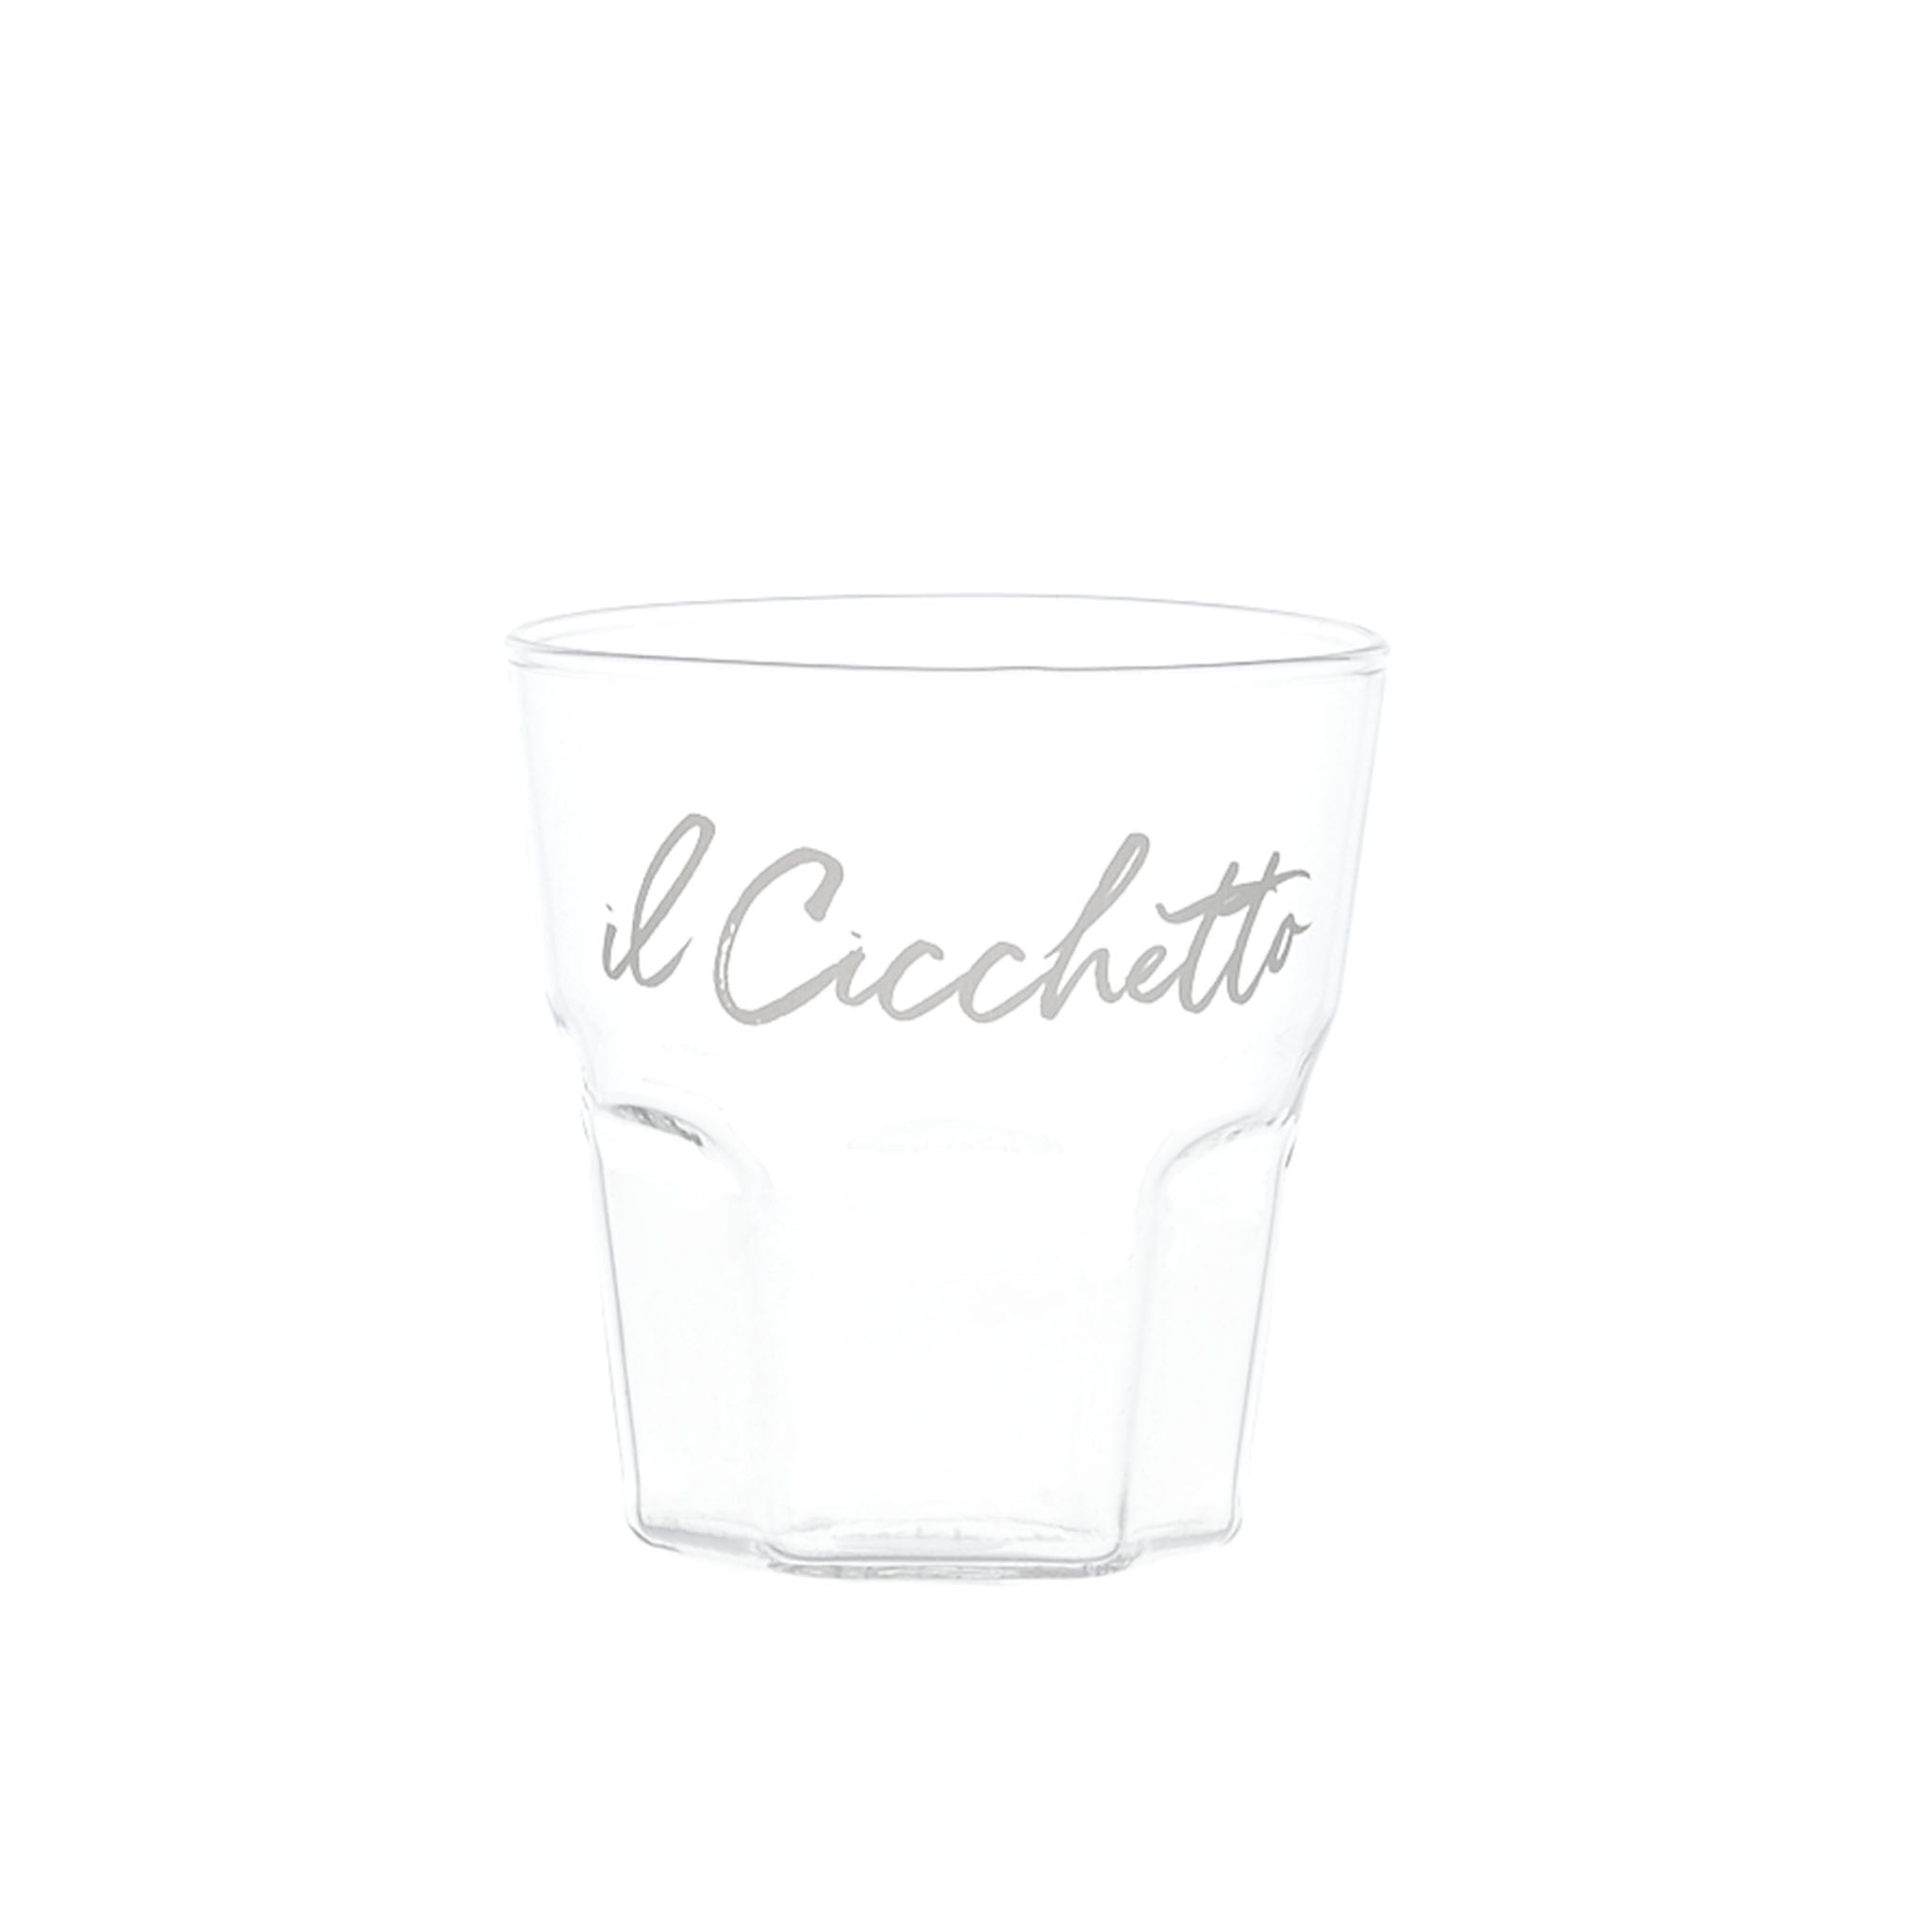 Liquor Glass "Il Cicchetto" in White - Set of 4